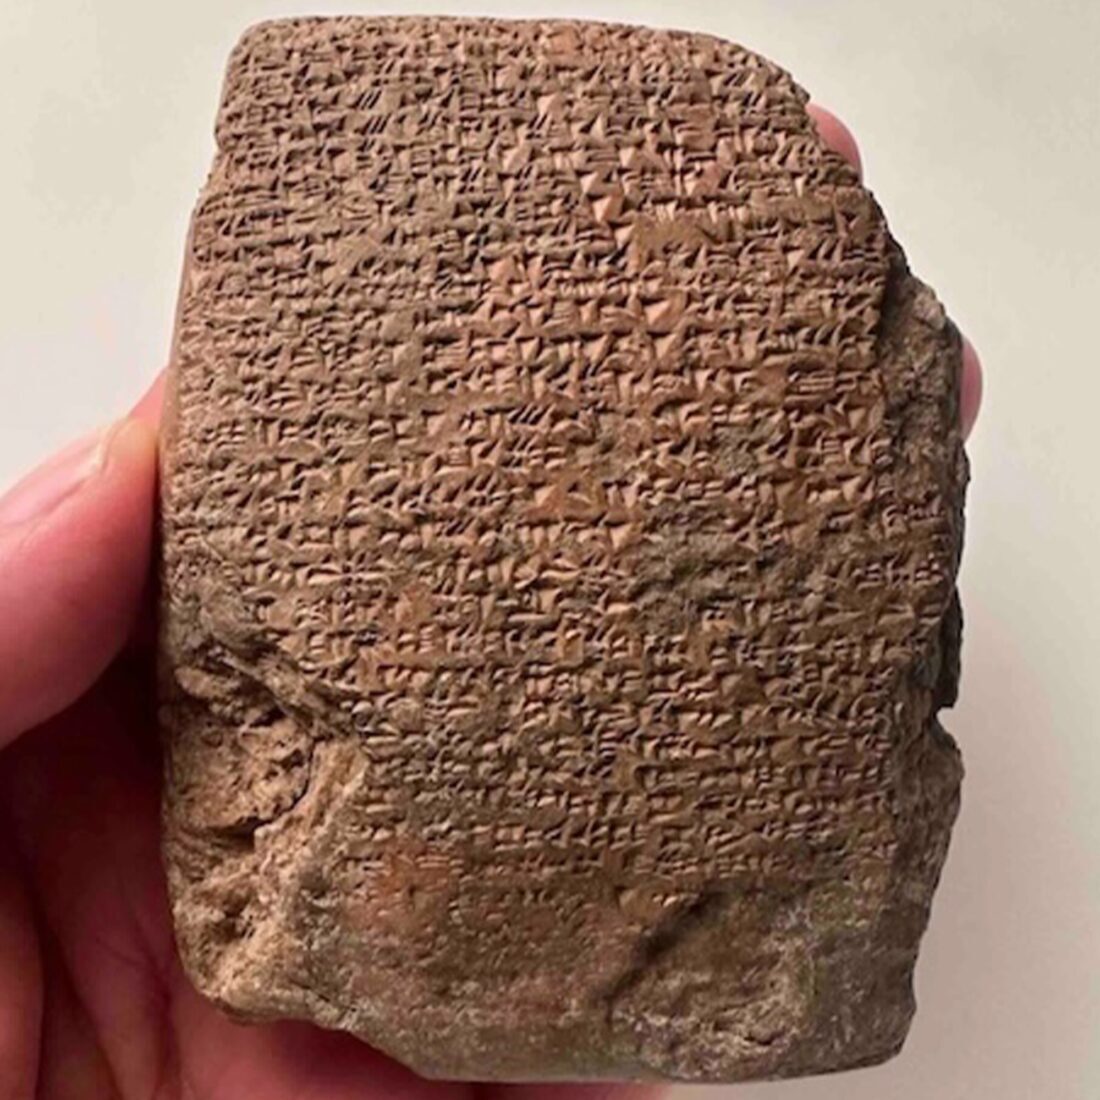 Hittite tablet discovered in Türkiye's Kirikkale's reveals secrets from past